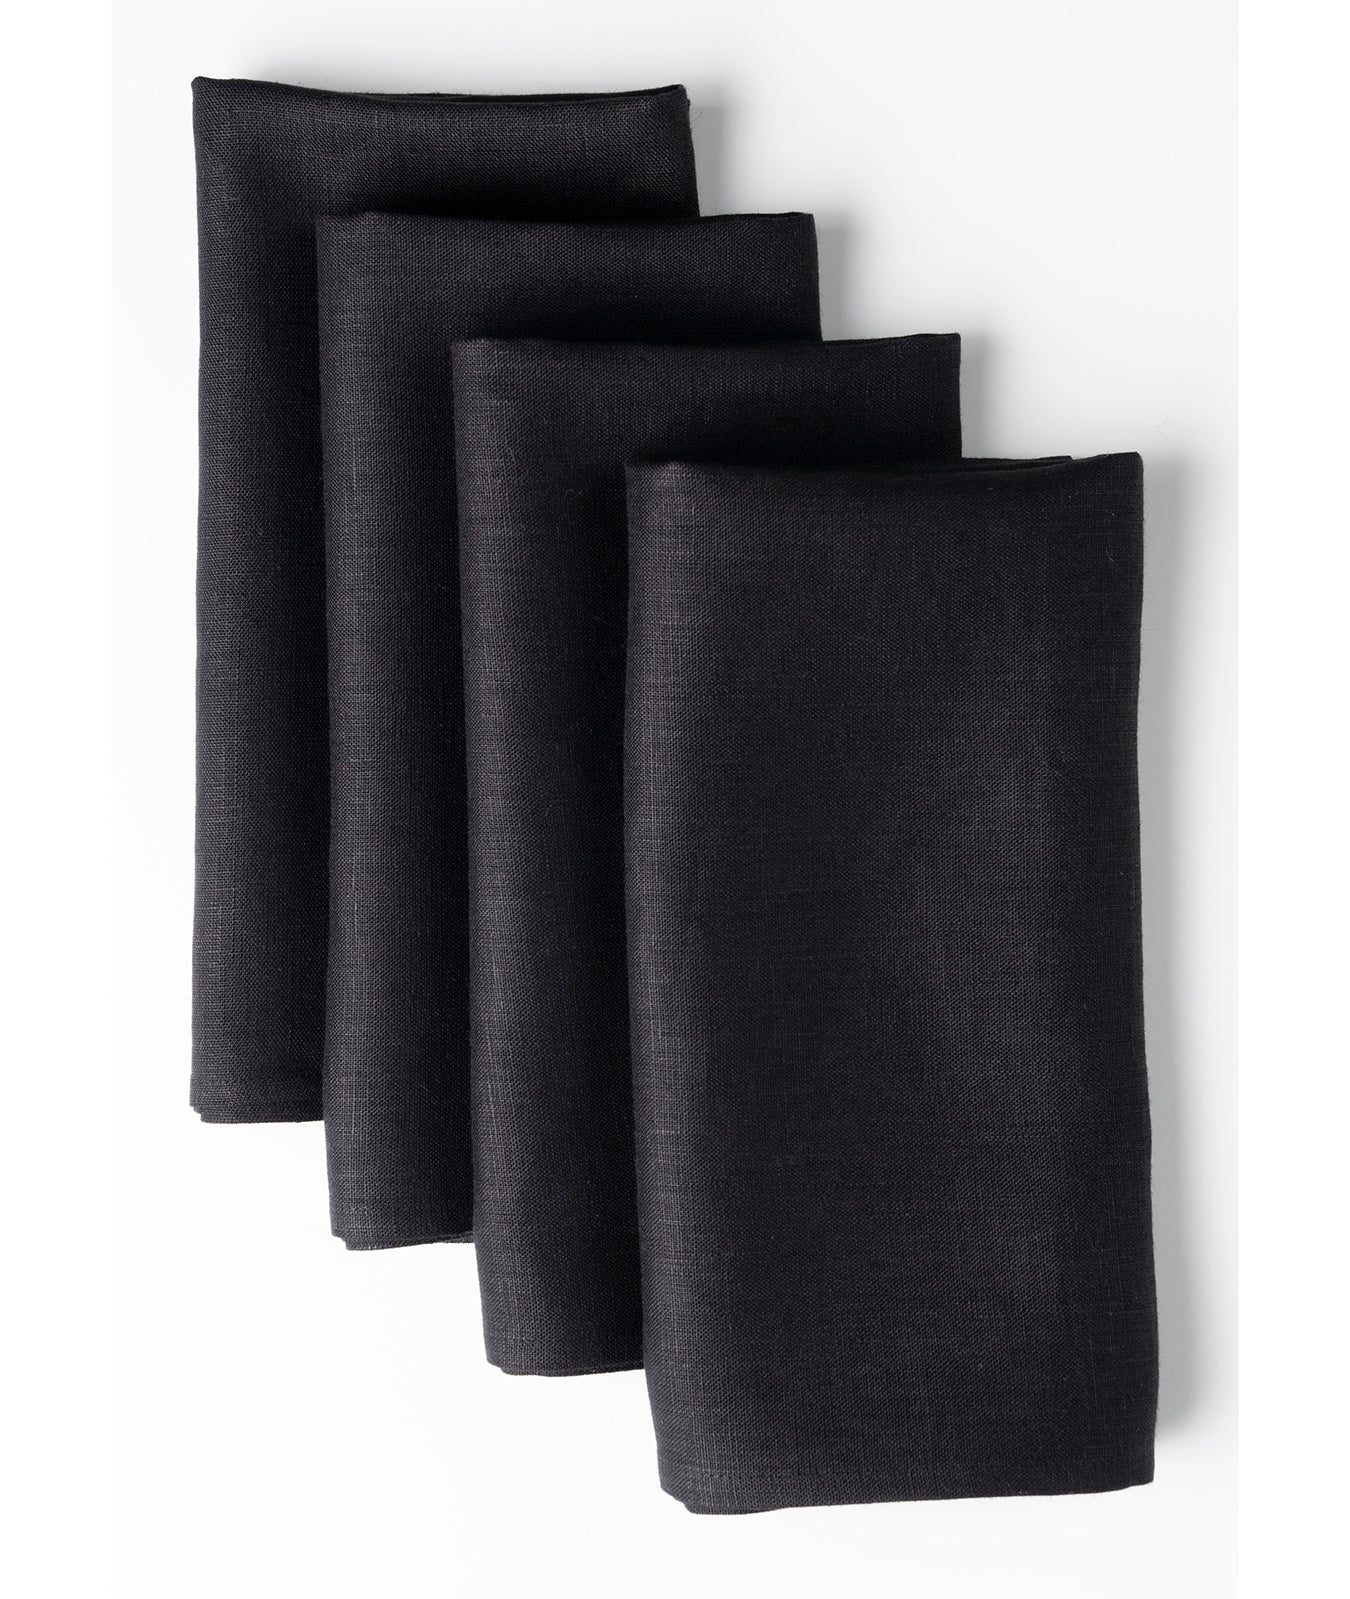 Black Linen Dinner Napkins 18 x 18 Inch Set of 4 - Hemmed